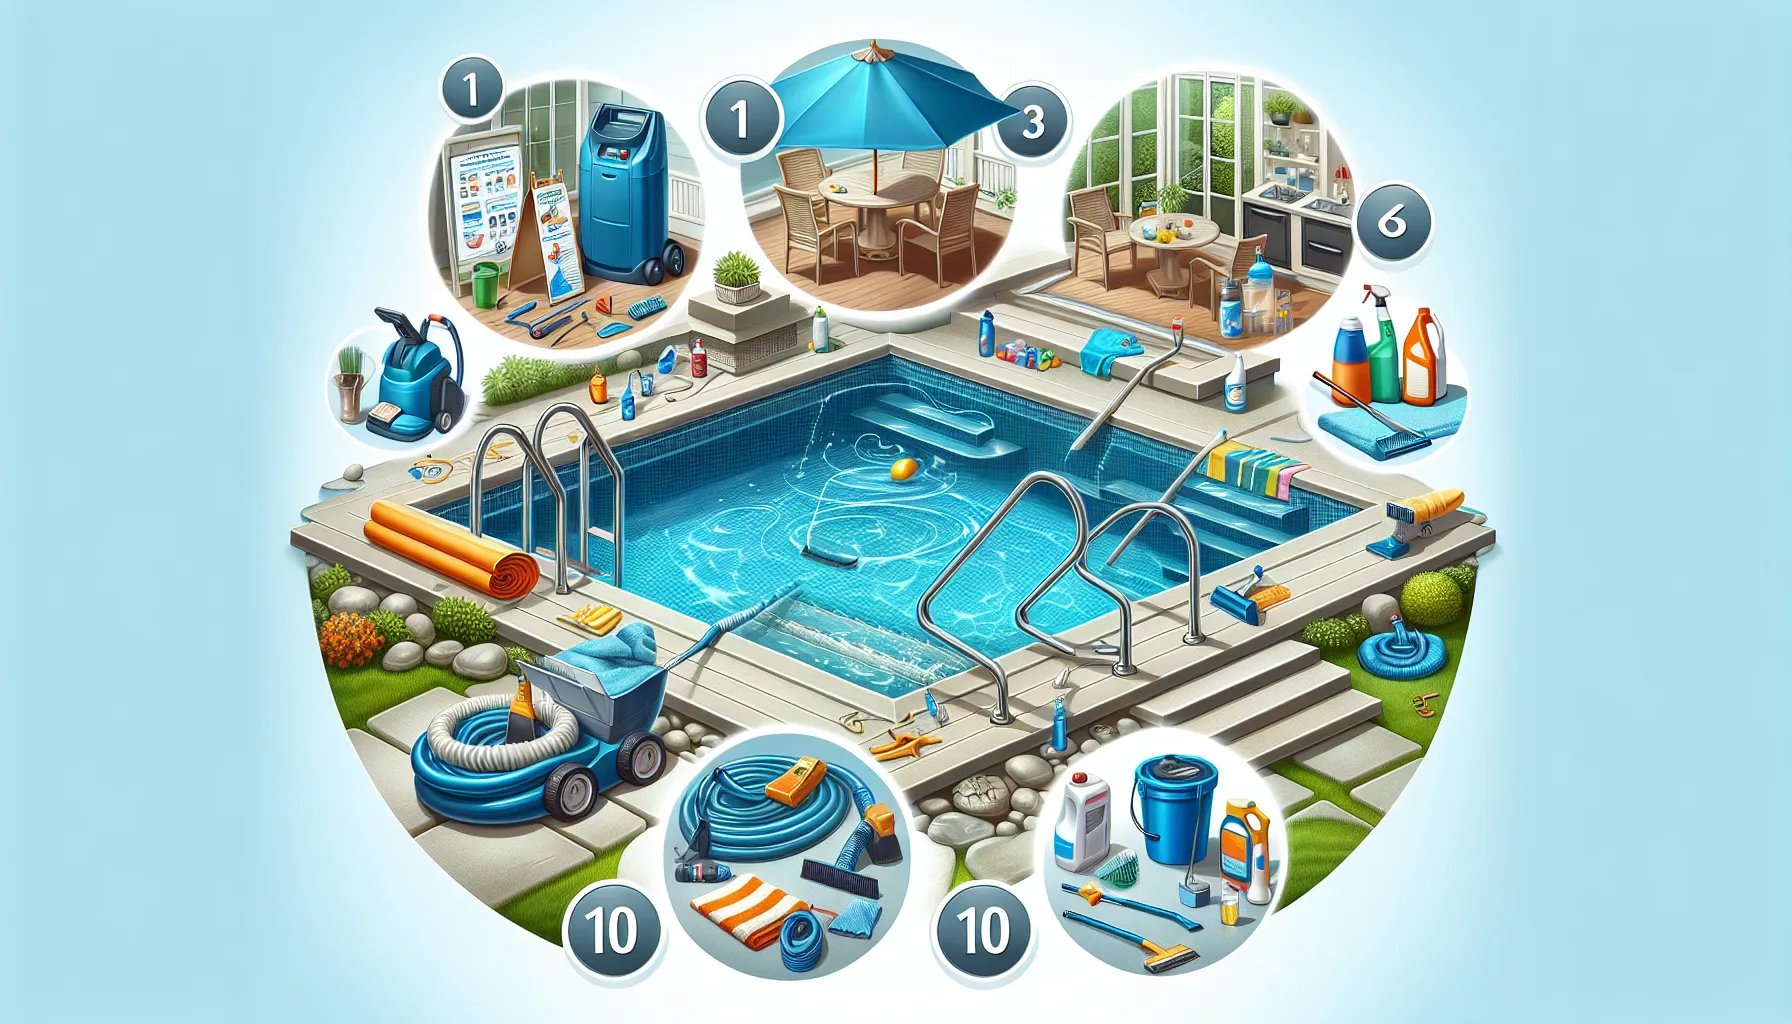 Imagen que muestra los 10 pasos para preparar la piscina antes del verano, con productos de limpieza y herramientas de mantenimiento.